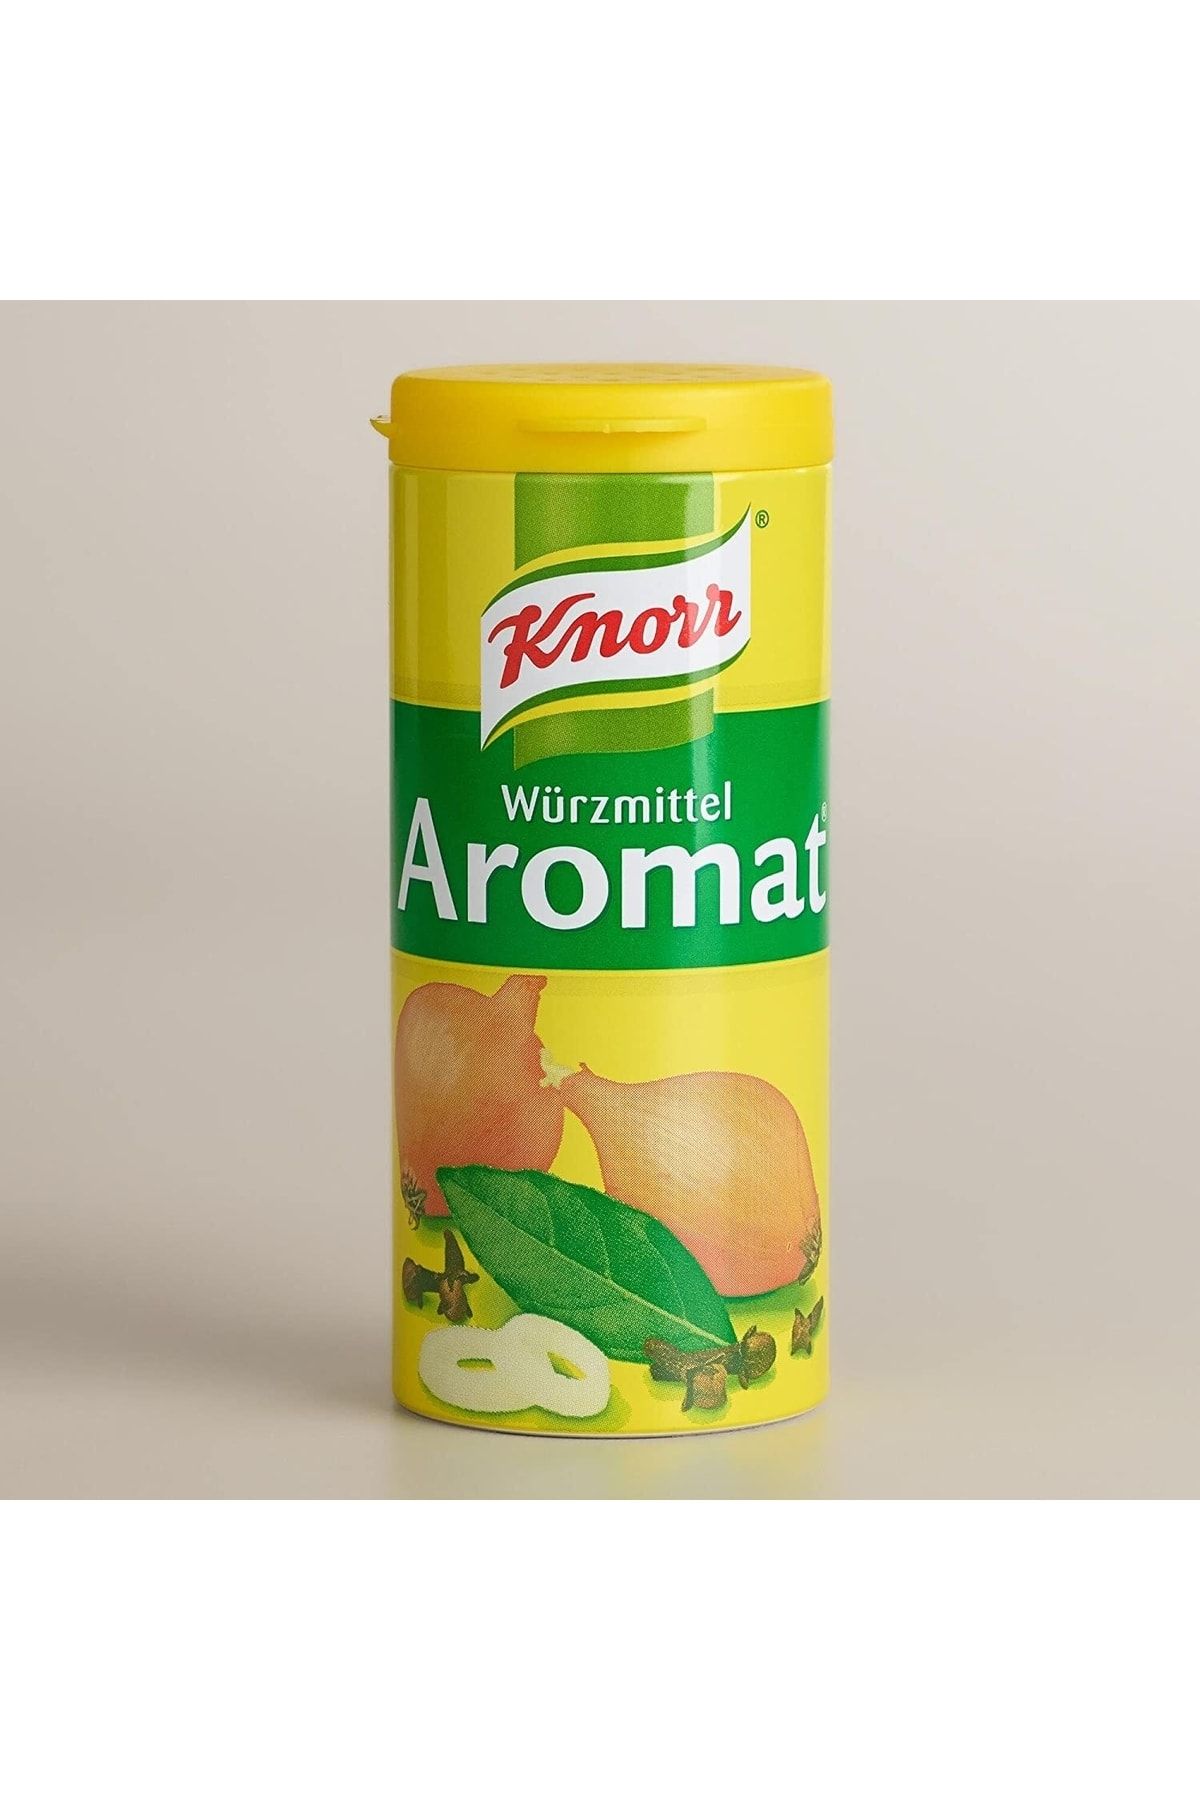 Knorr Würzmittel Aromat 100 Gr